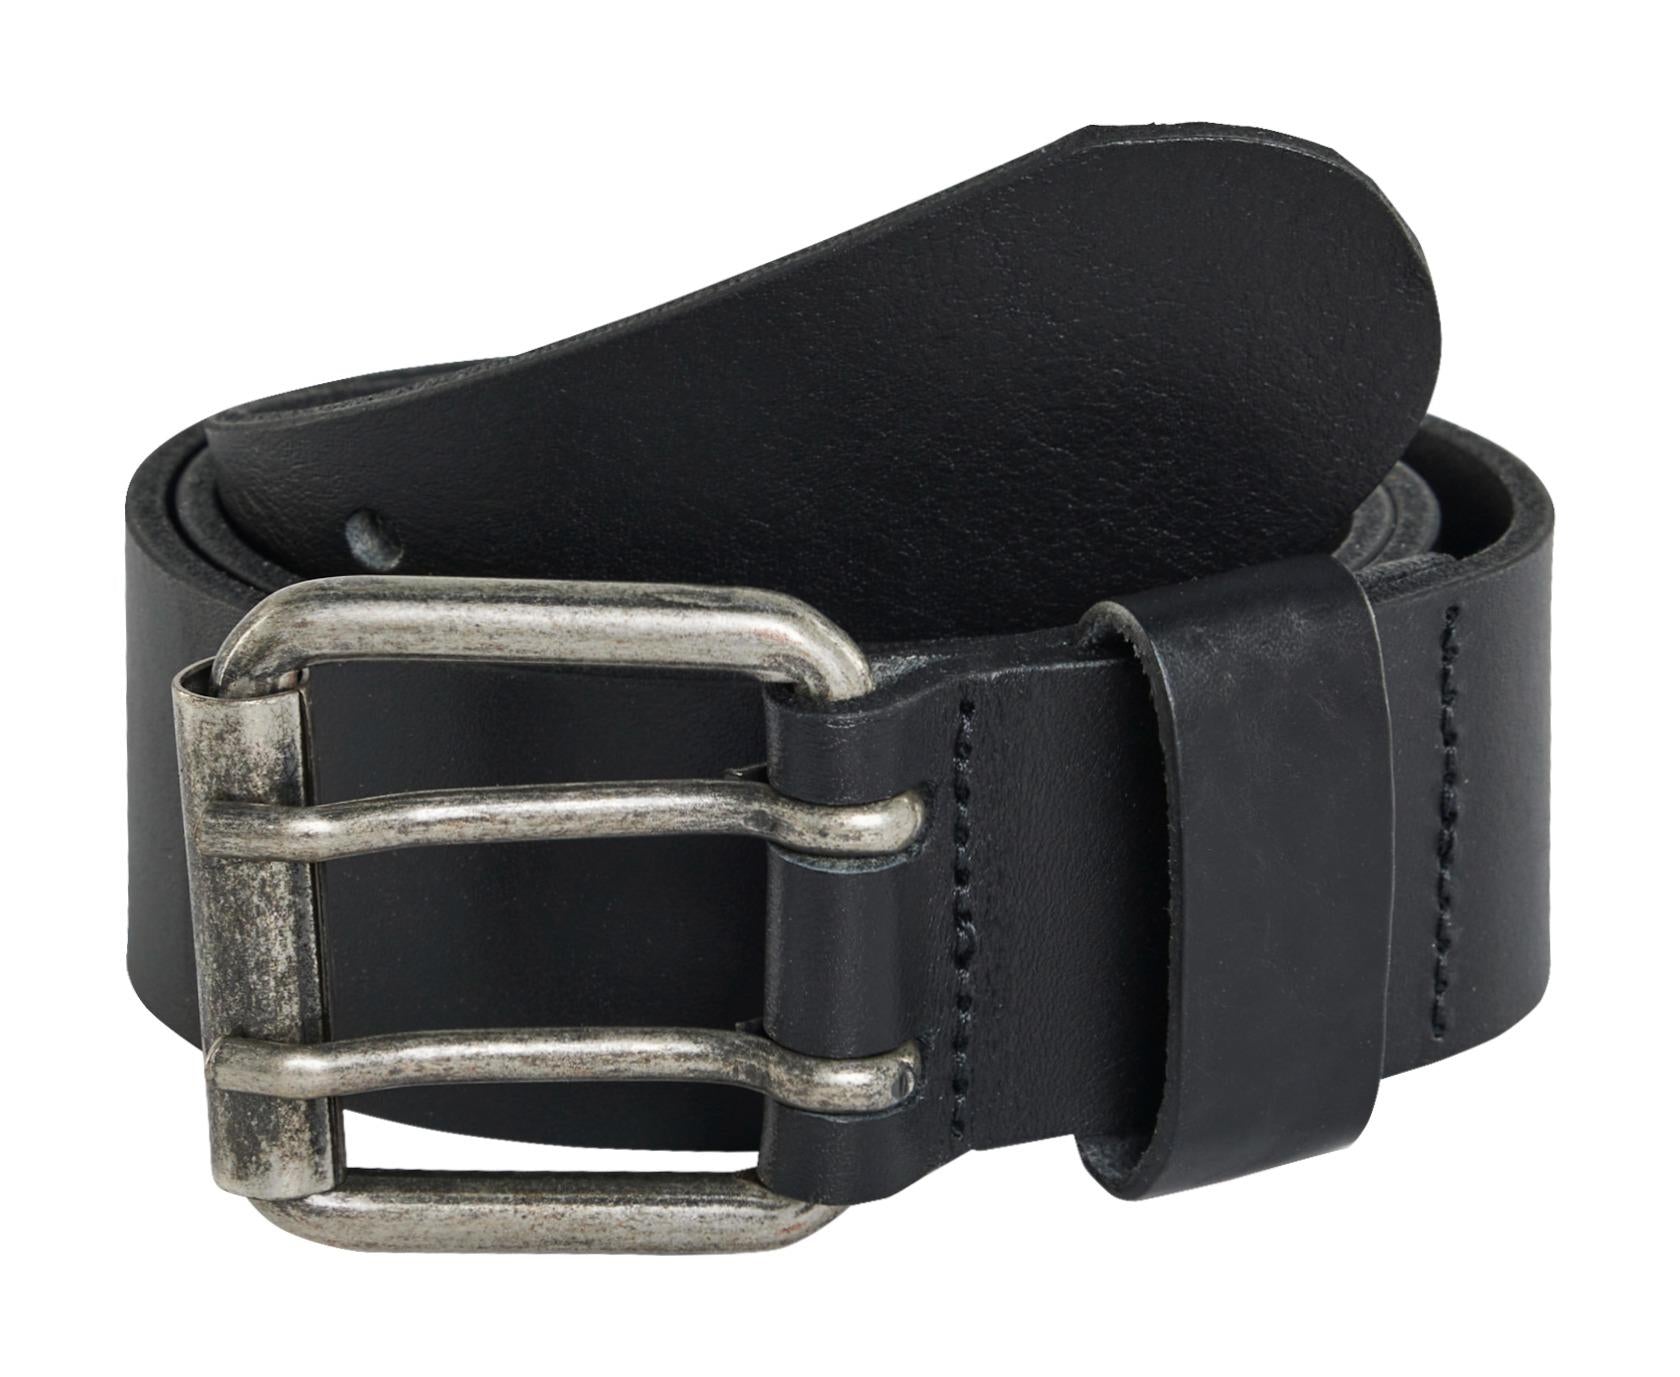 Blaklader black leather belt with metal buckle #4007